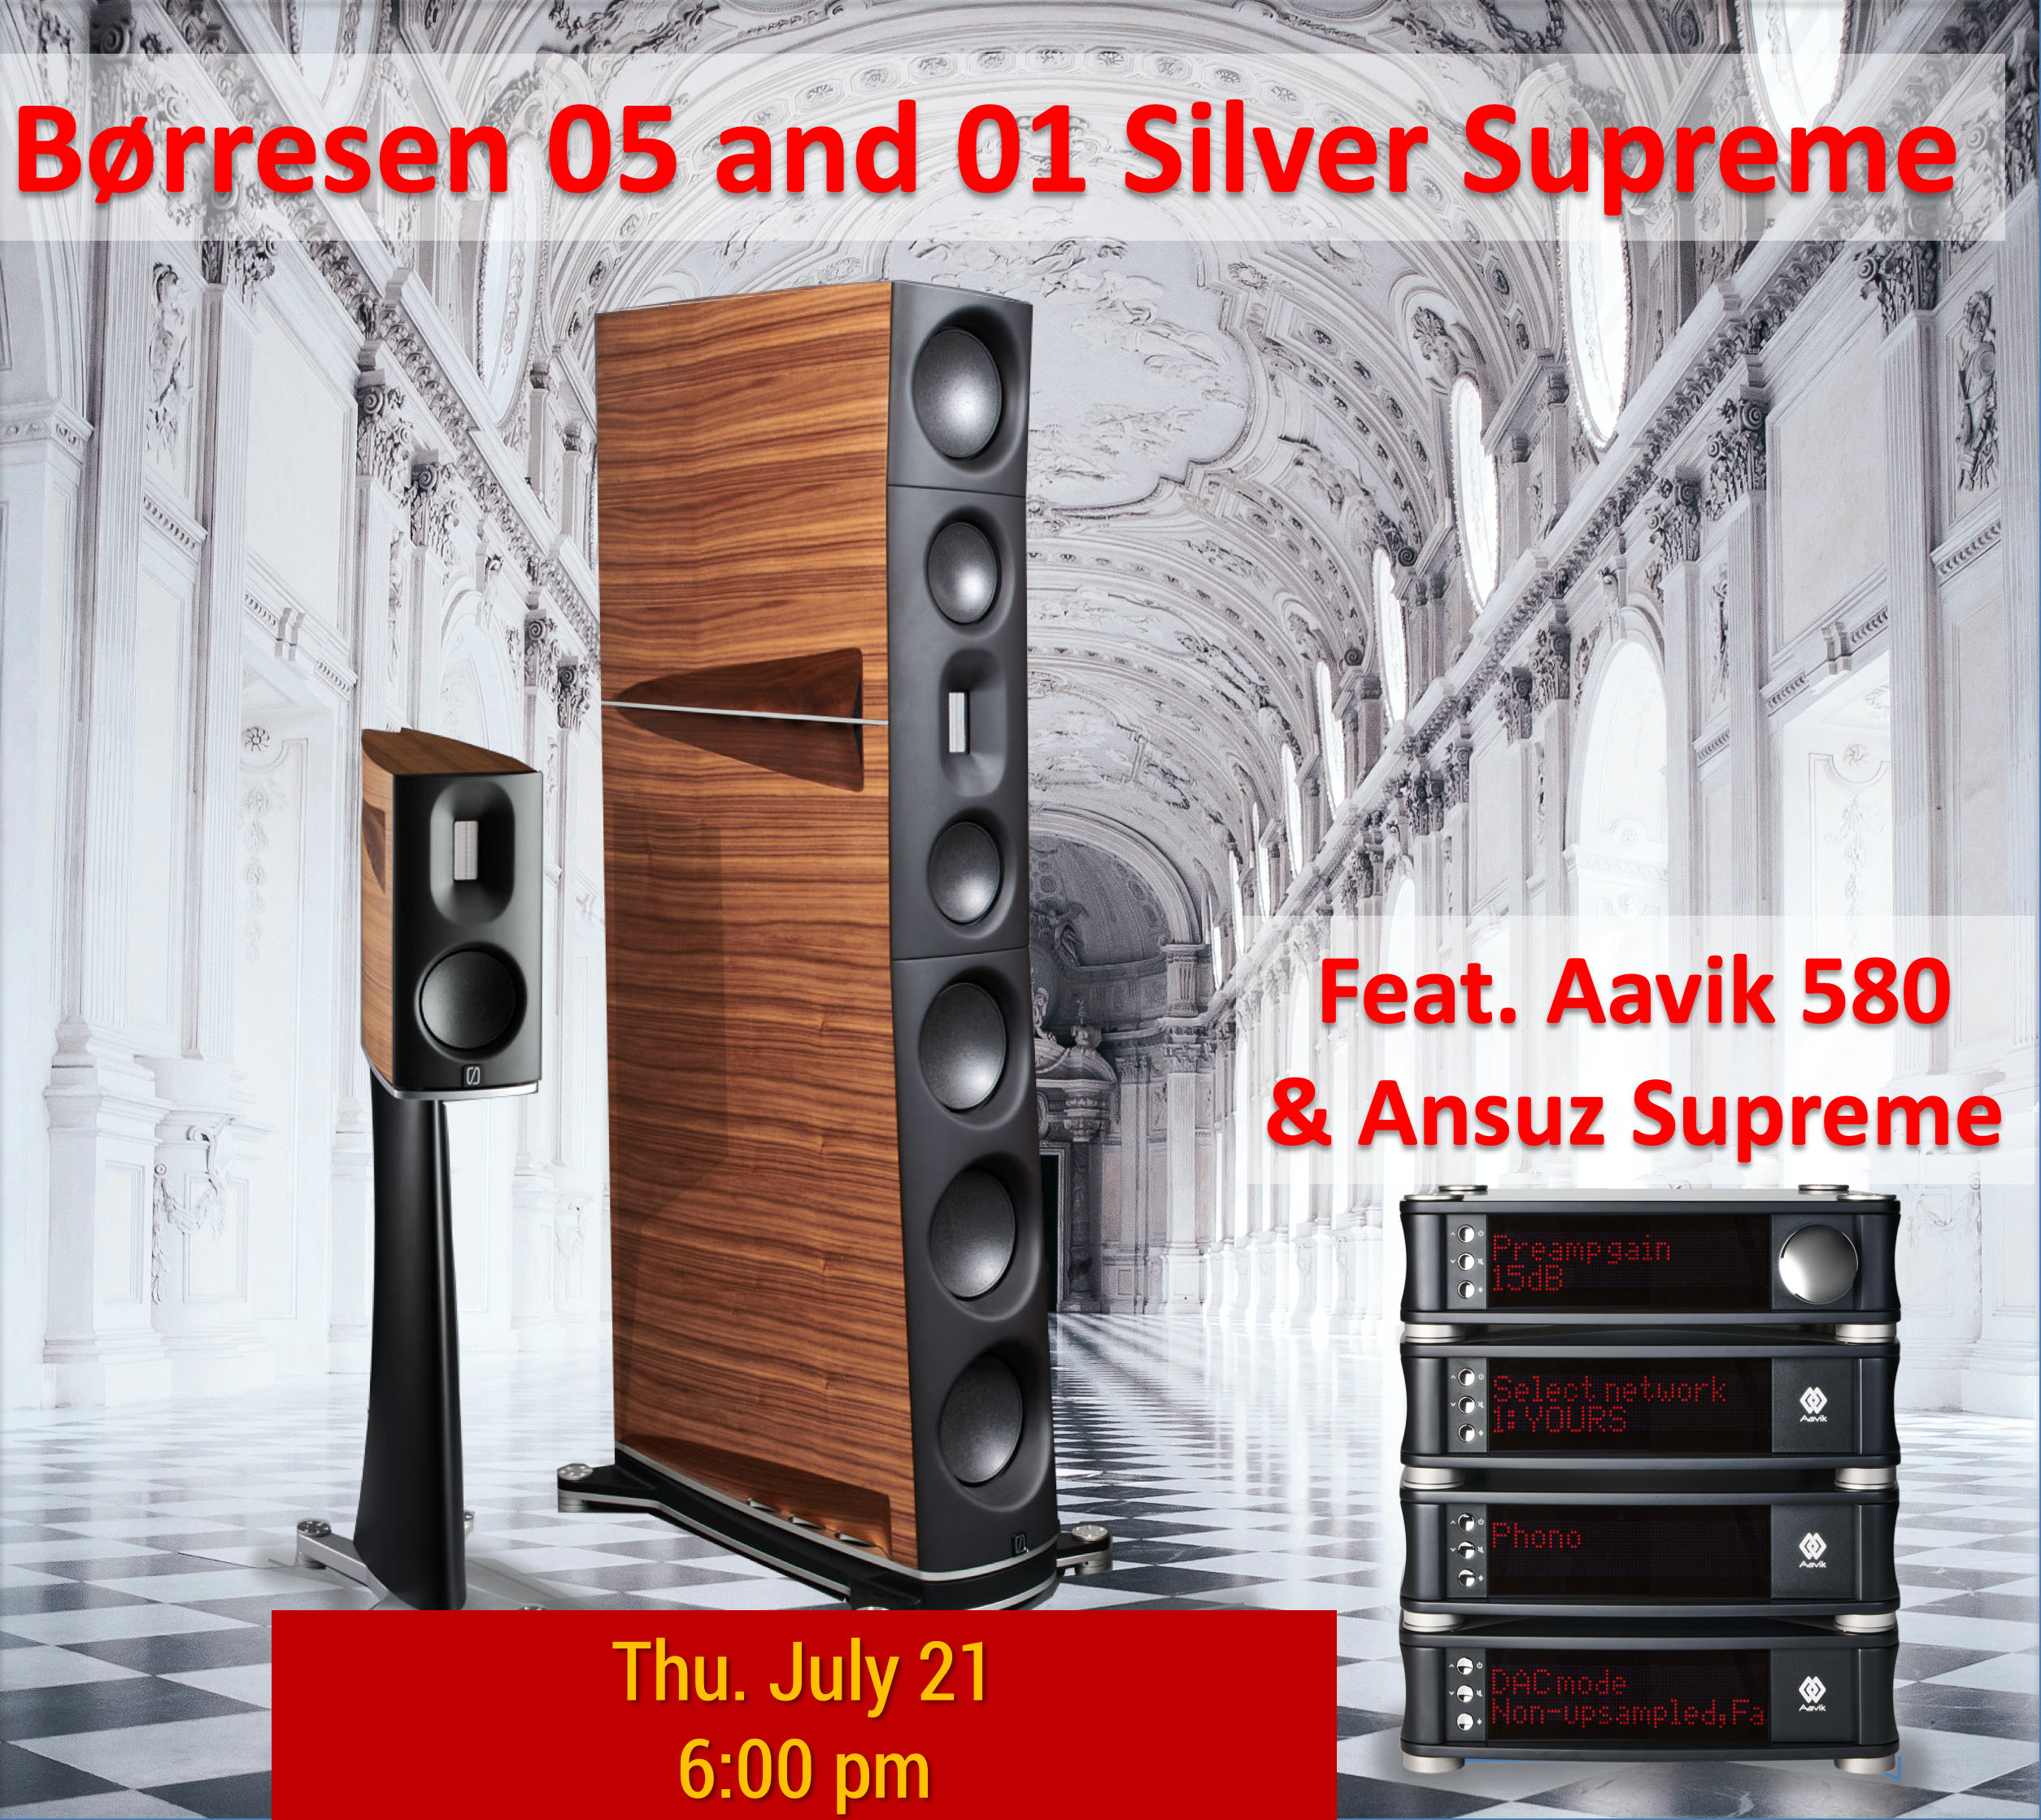 Borresen 05 and 01 Silver Supreme Event